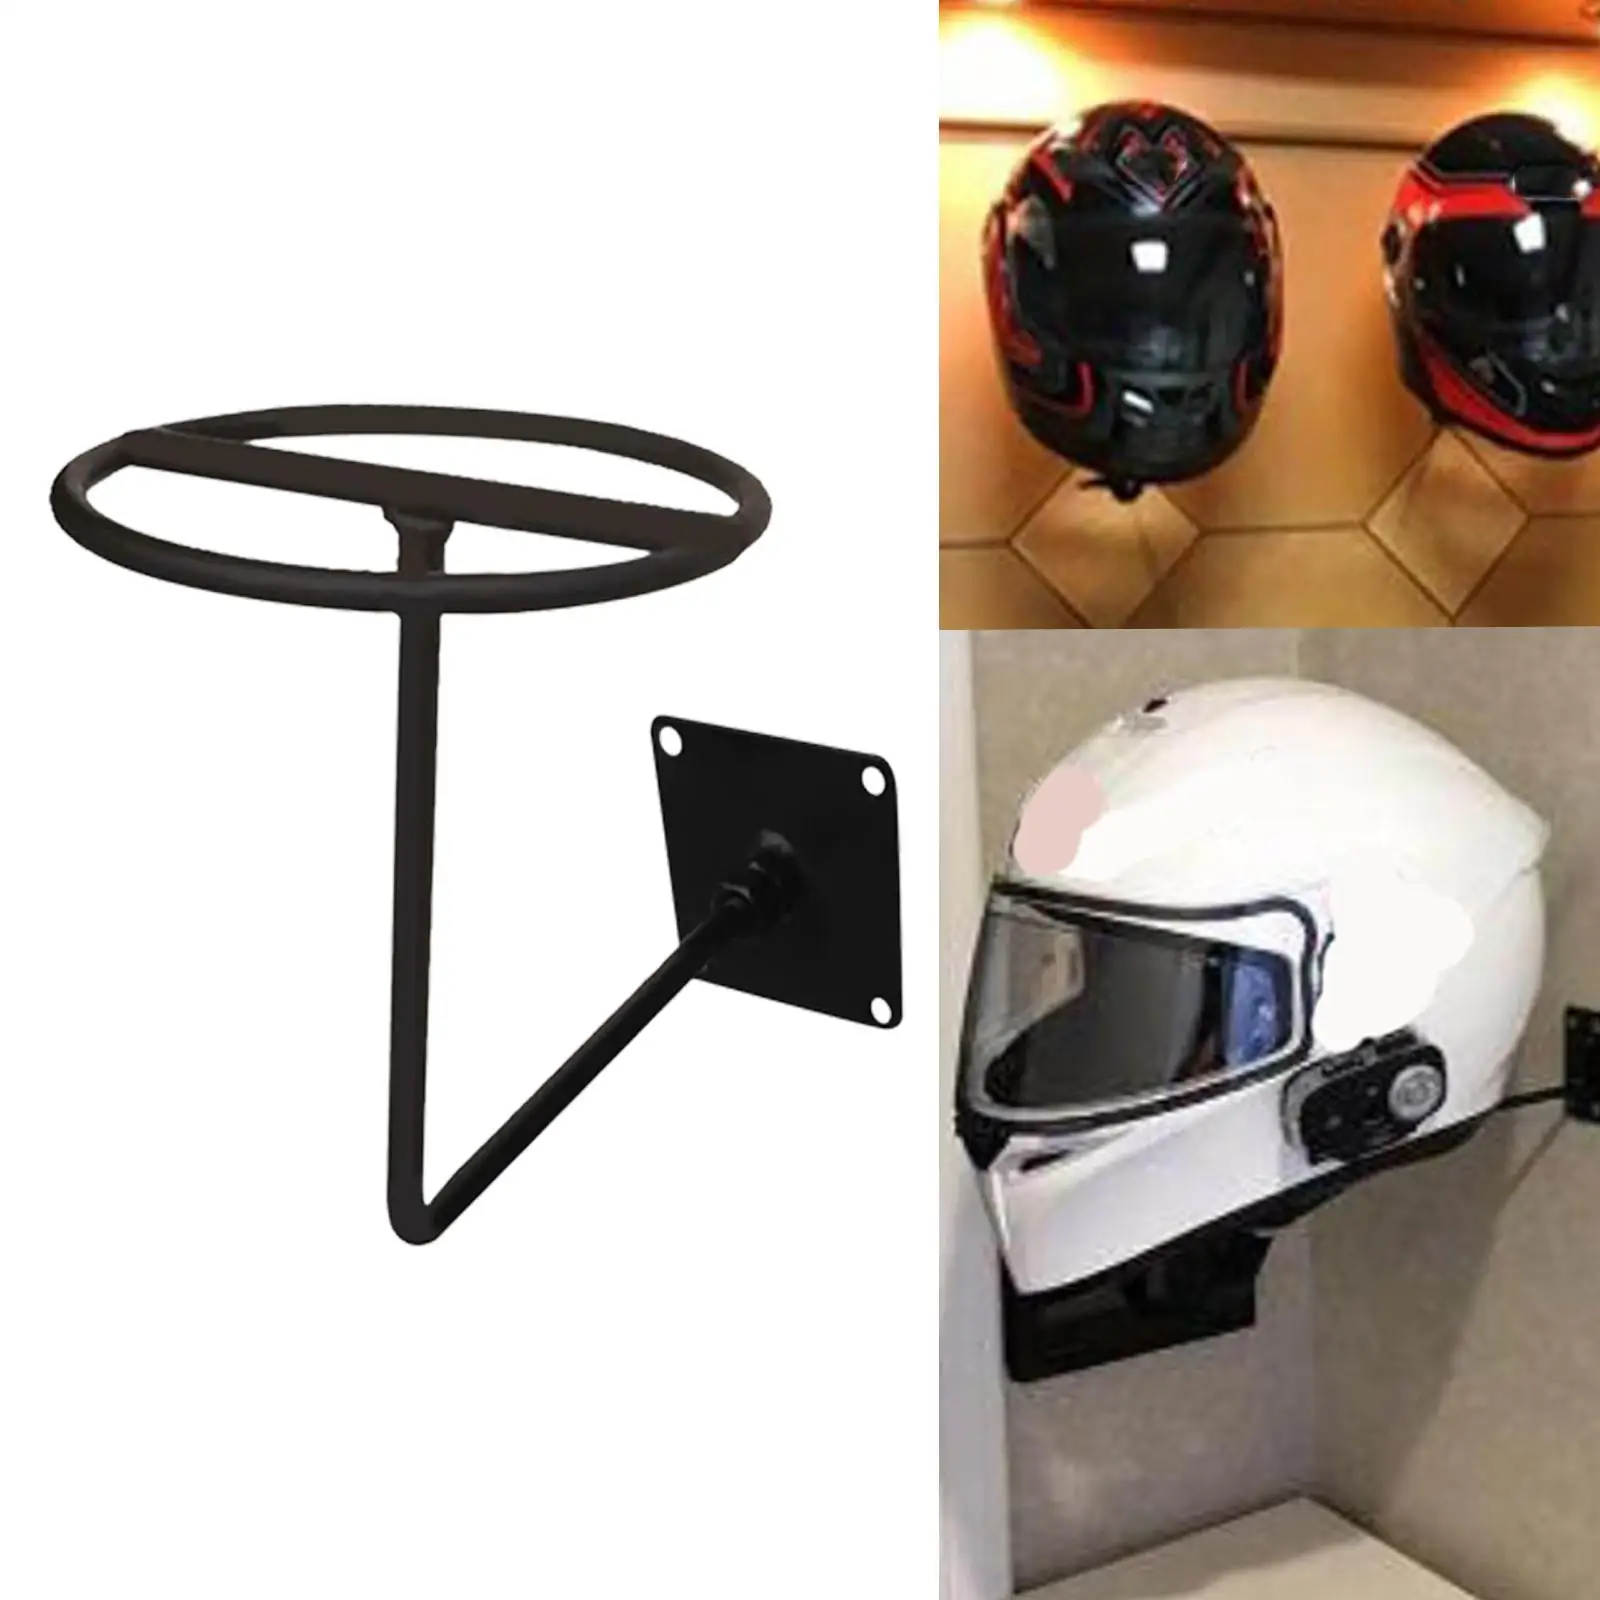 Helmet Holder Multifunctional Accessories Hook for Coats Caps Garage